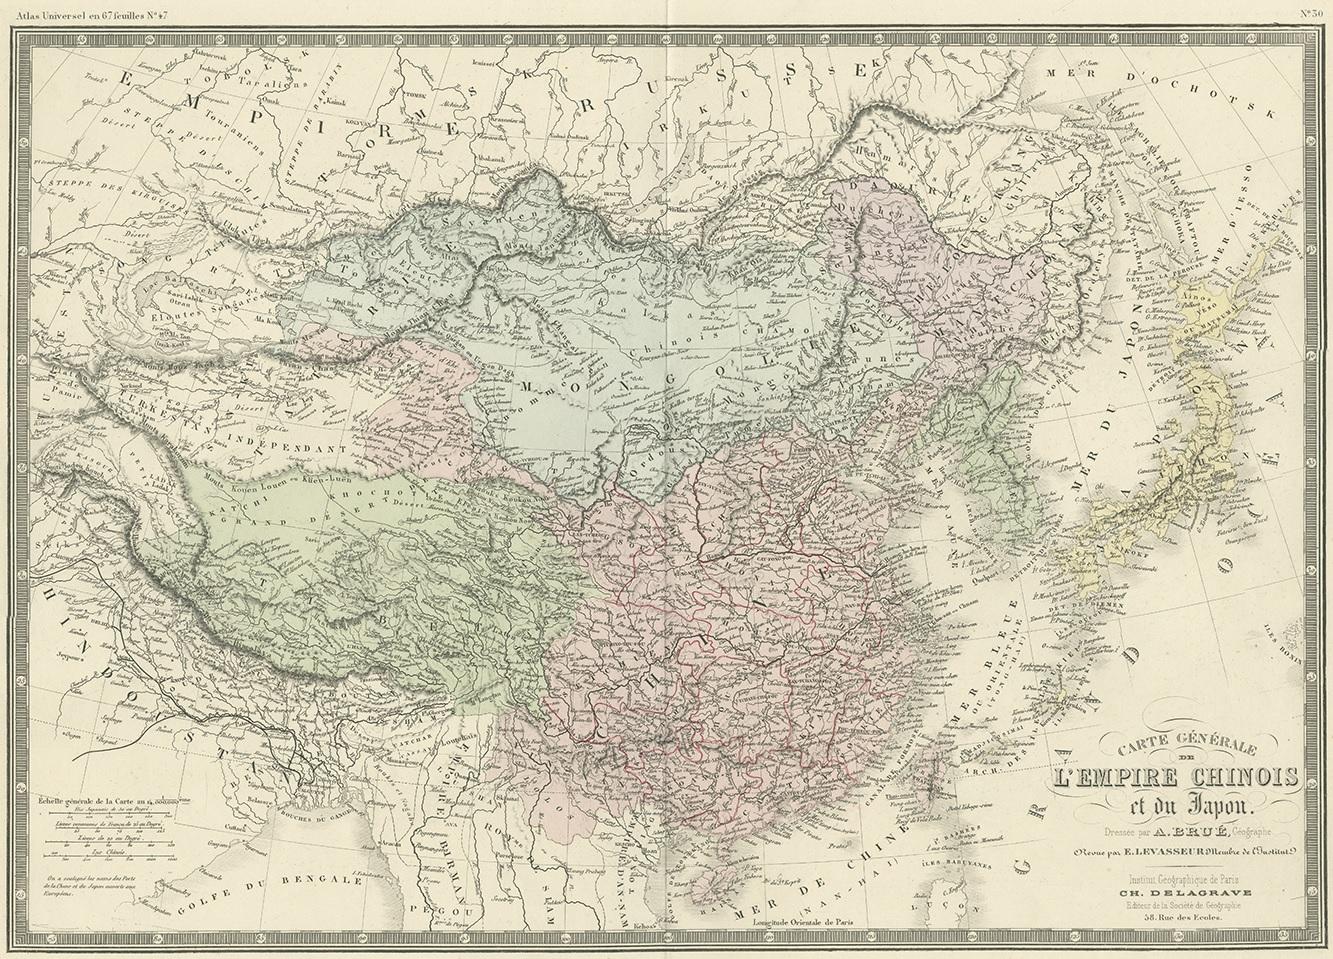 Antique map titled 'Carte générale de l'Empire Chinois et du Japon'. Large map of the Chinese Empire and Japan. This map originates from 'Atlas de Géographie Moderne Physique et Politique' by A. Levasseur. Published 1875.